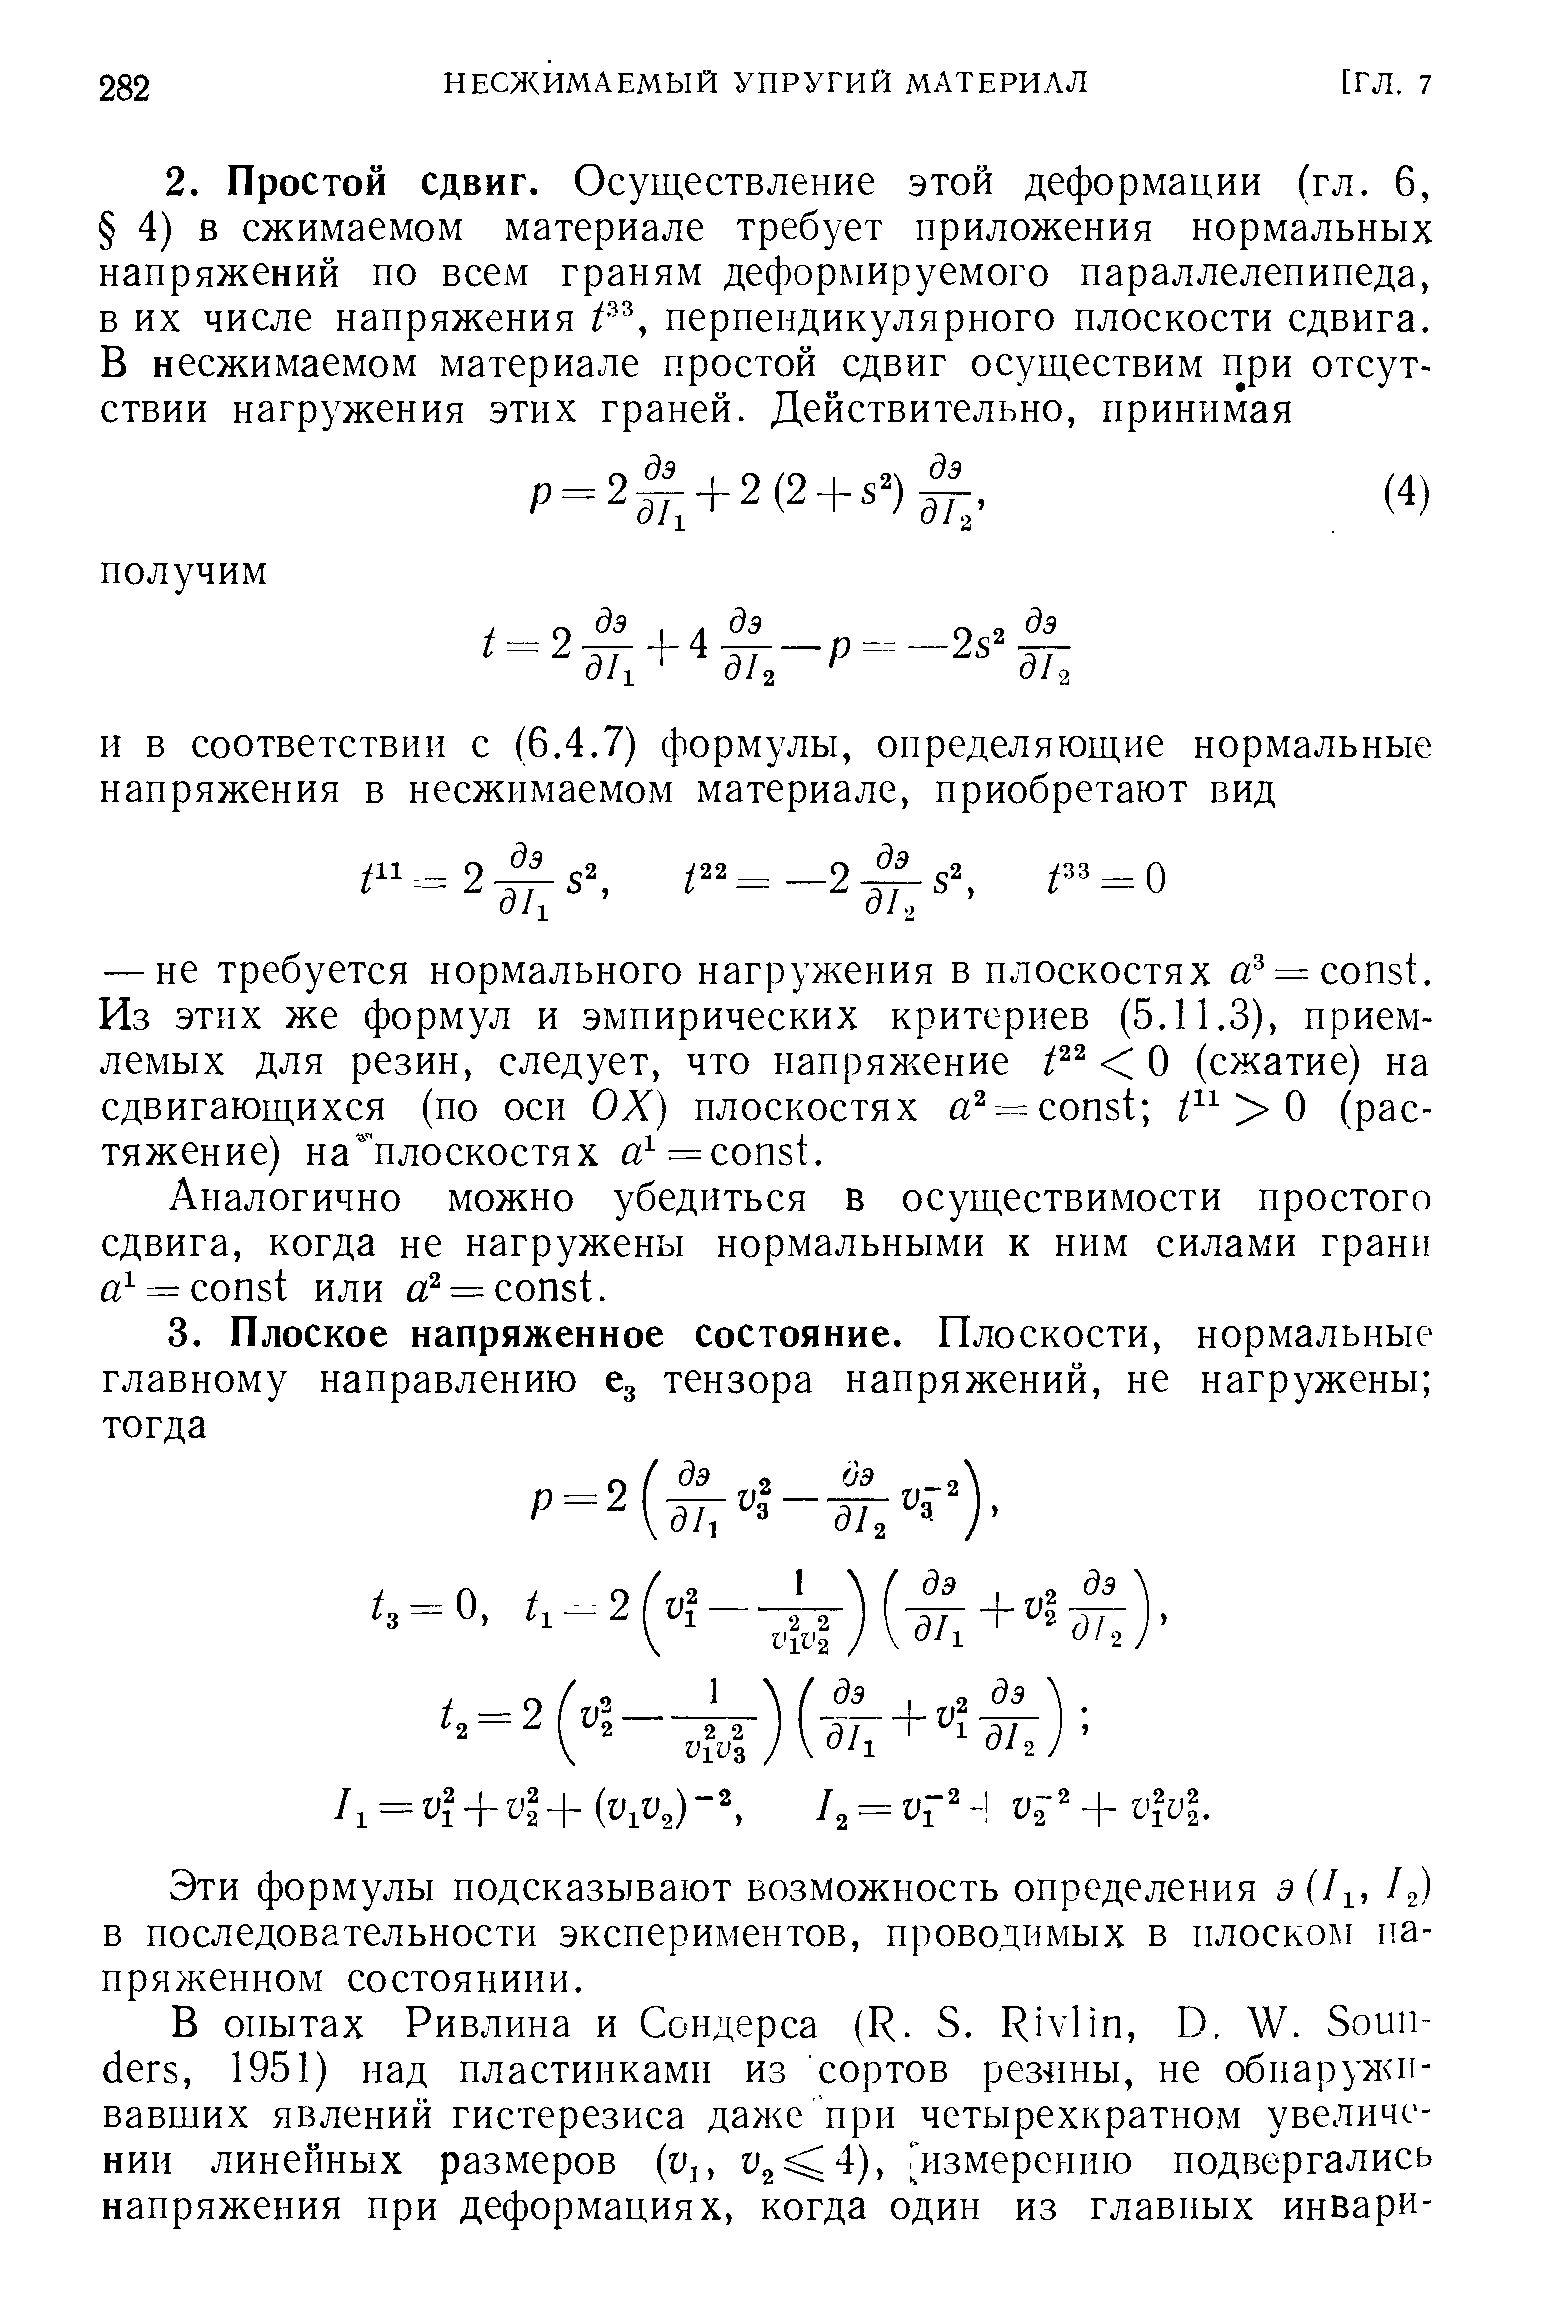 Эти формулы подсказывают возможность определения a(/i, 12) в последовательности экспериментов, проводимых в плоском напряженном состояниии.
